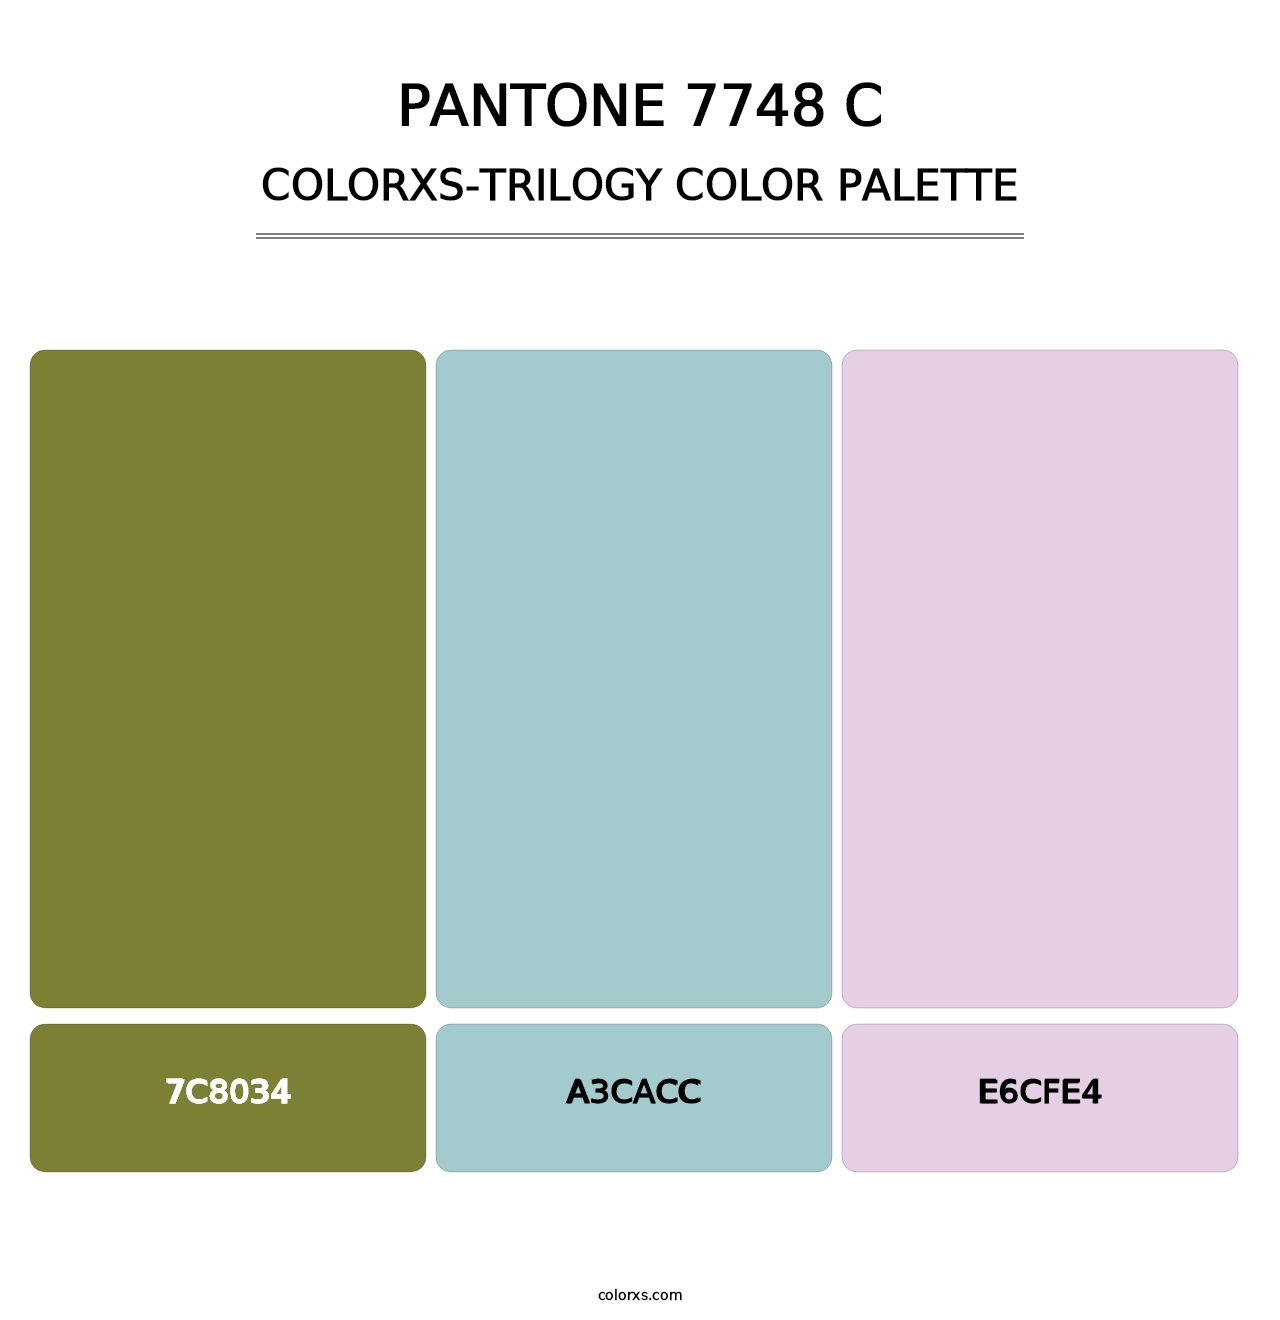 PANTONE 7748 C - Colorxs Trilogy Palette